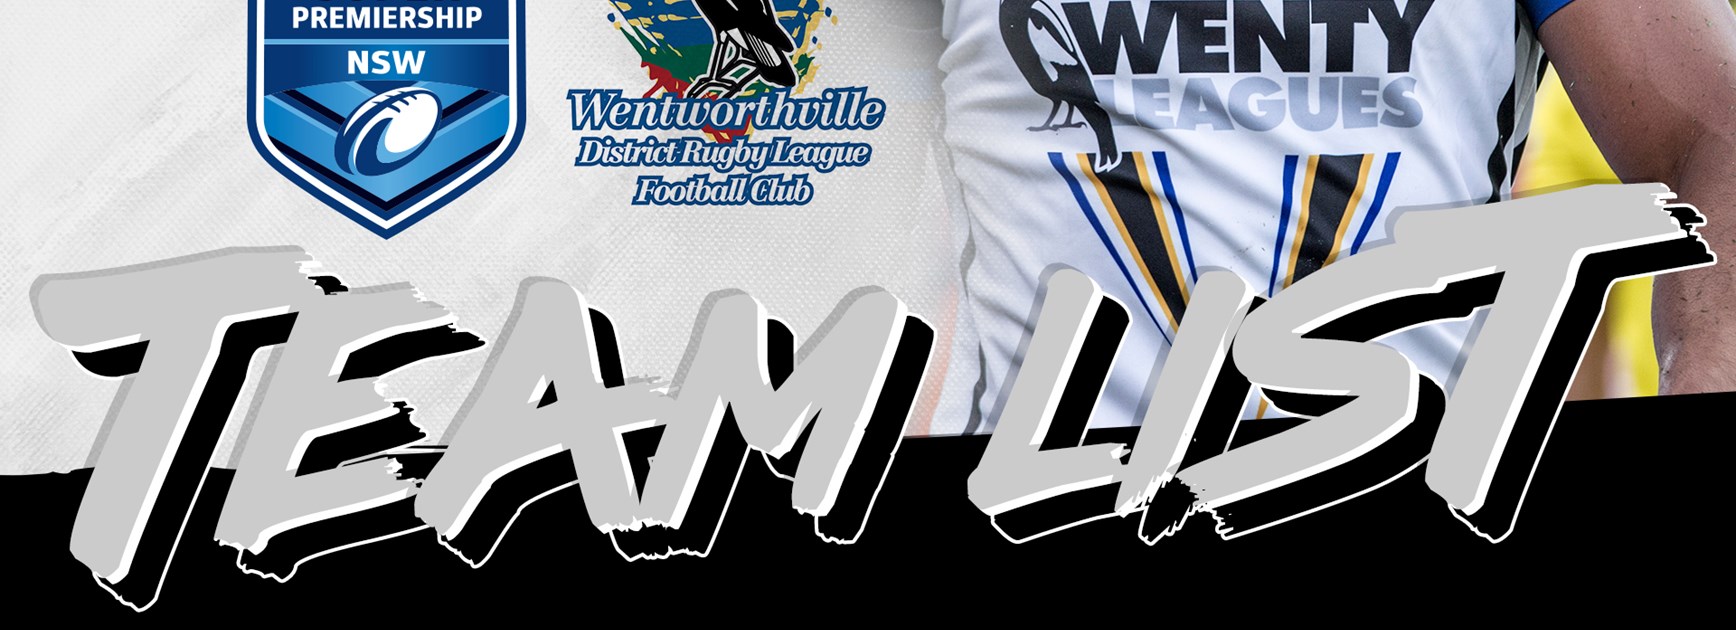 Wentworthville Magpies Round 11 Team List